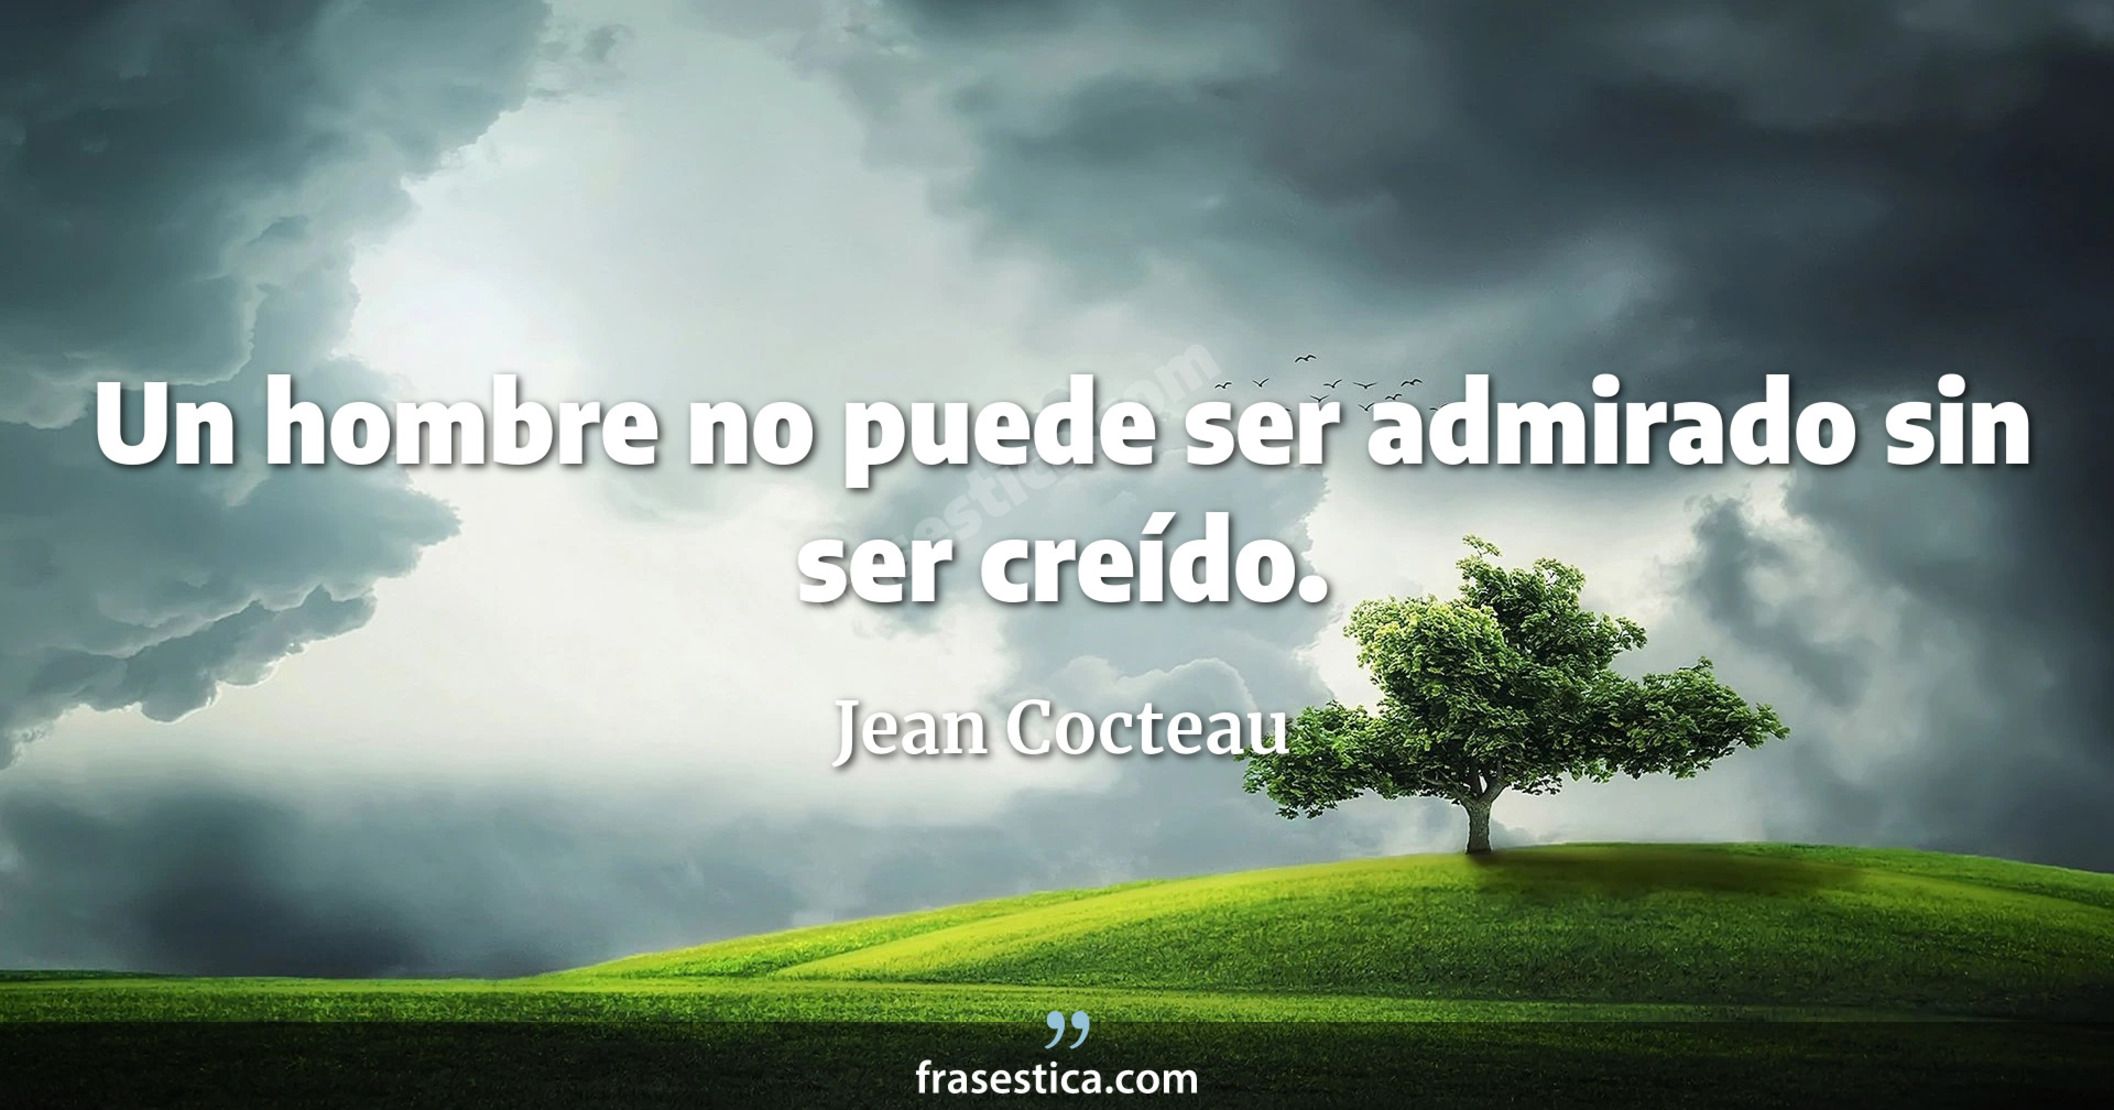 Un hombre no puede ser admirado sin ser creído. - Jean Cocteau